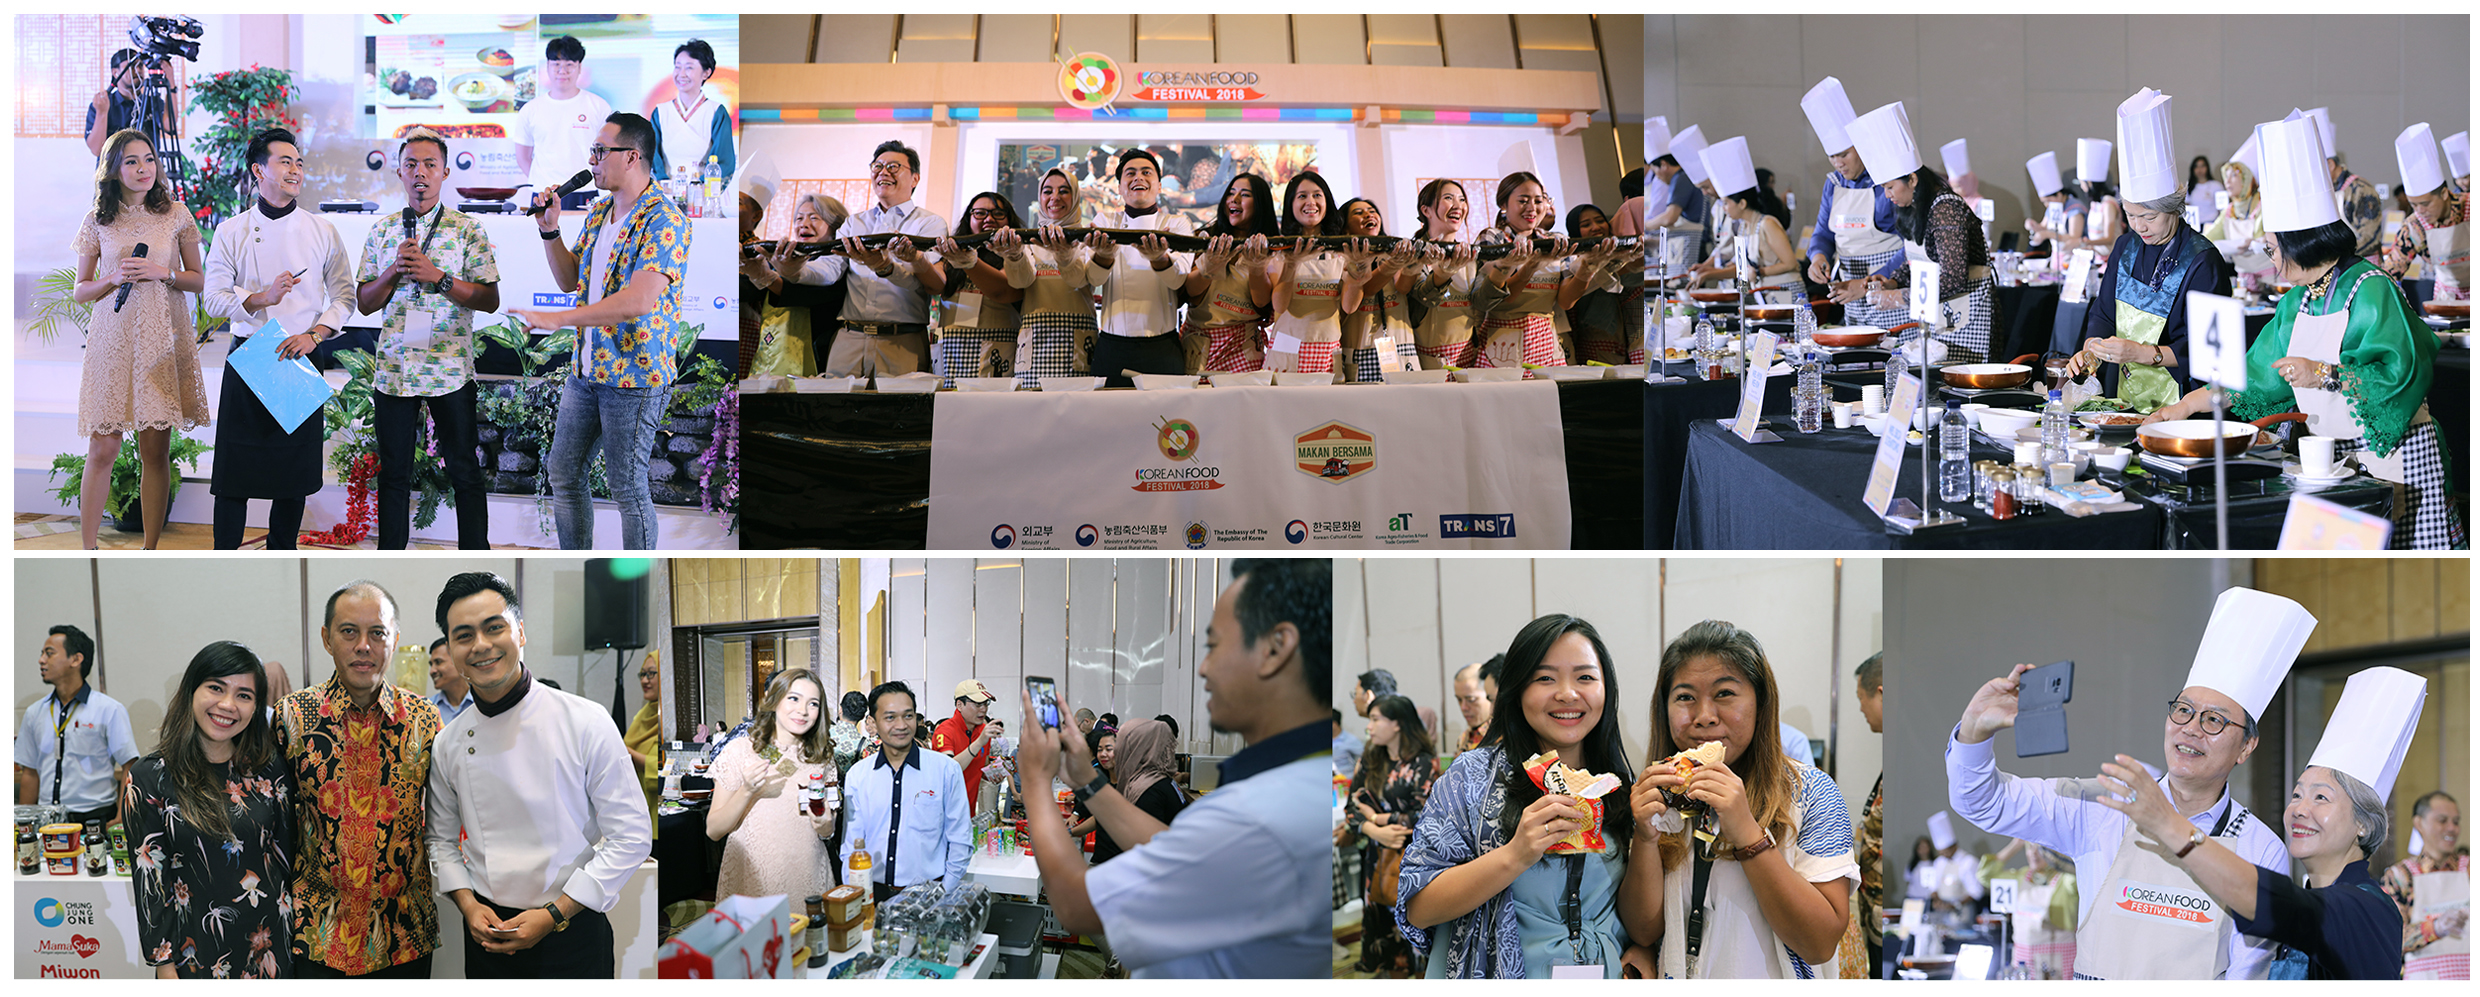 한국대사관은 인도네시아에서 각광받고 있는 유튜버나 SNS 50만 명 이상의 팔로워를 보유한 인플루언서들을 초대해 한식행사를 하고 있다.